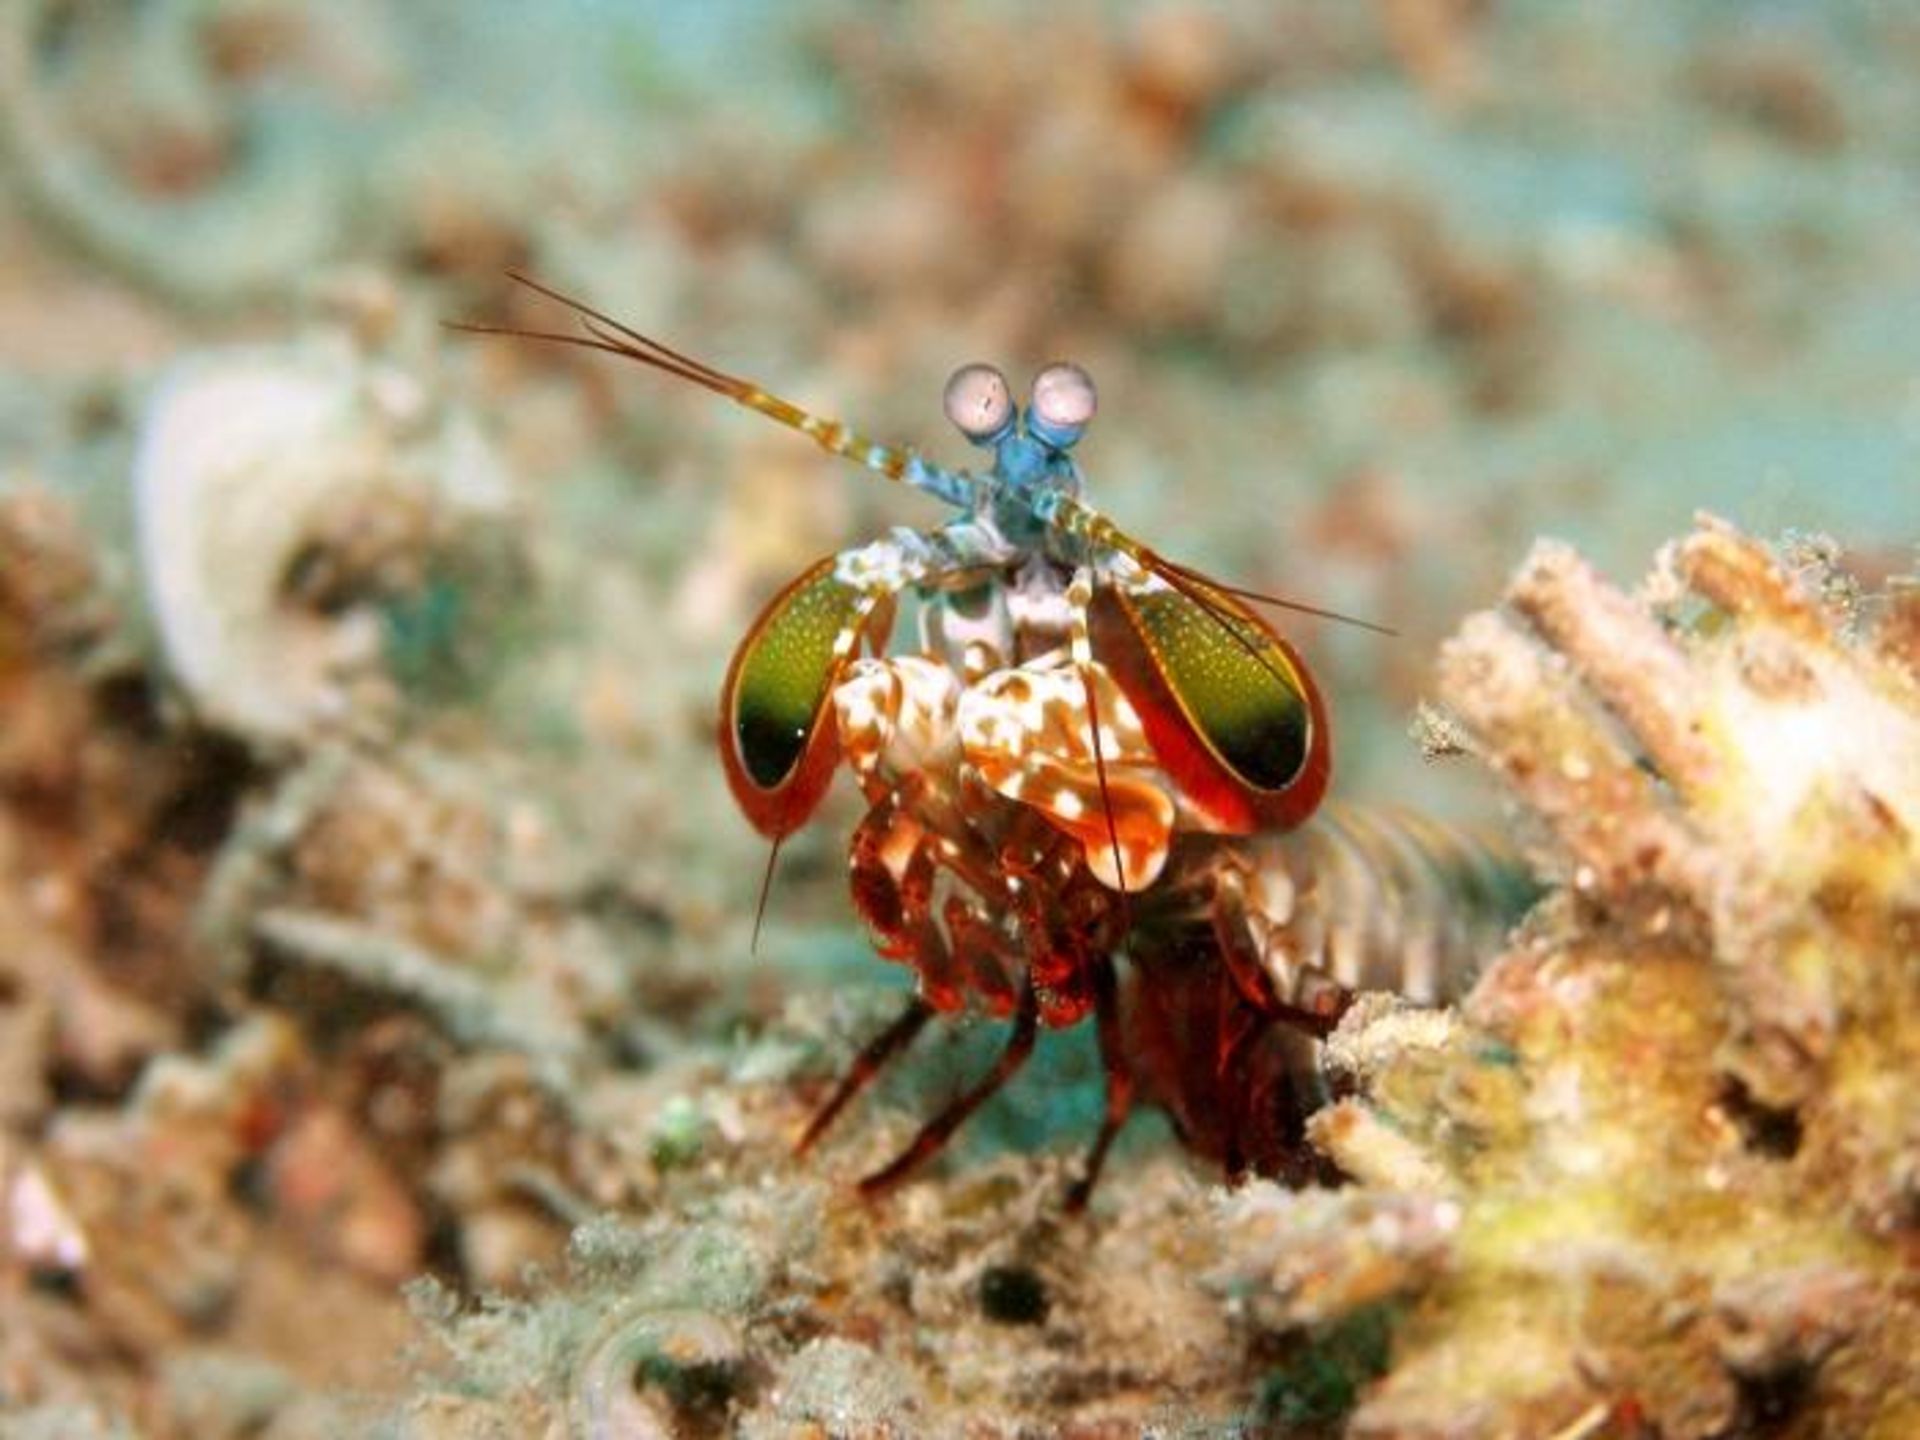 میگوی طاووسی / peacock mantis shrimp